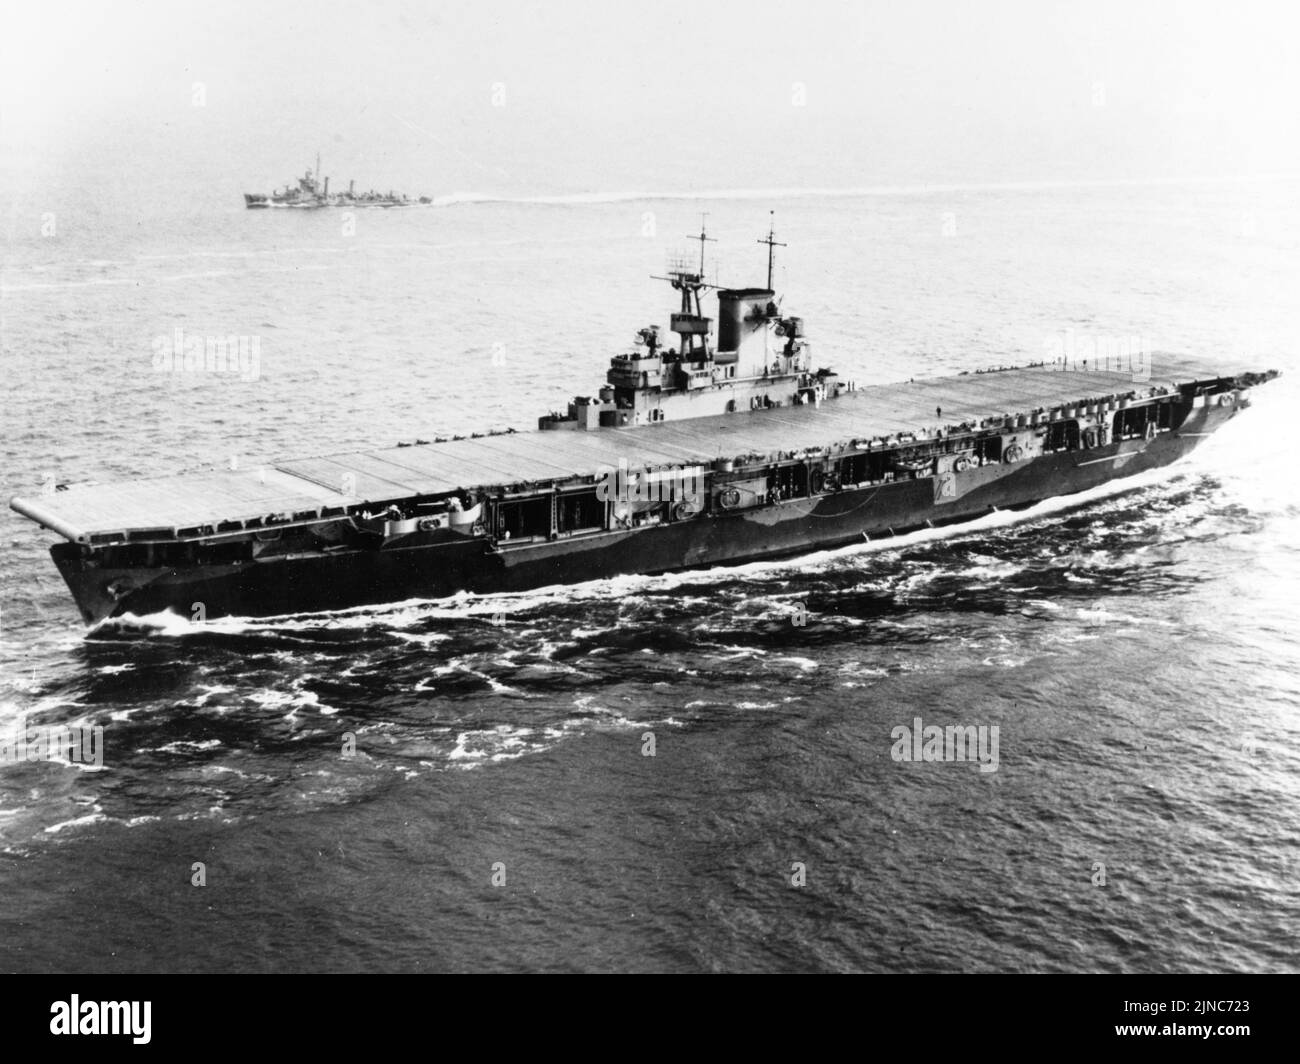 Der US-amerikanische Flugzeugträger USS Wasp (CV-7), der am 26. Mai 1942 in Hampton Roads, Virginia (USA) eintrat. Im Hintergrund ist der eskortierende Zerstörer USS Edison (DD-439) zu sehen. USS Wasp wurde wenige Monate später versenkt, nachdem es während der Invasion von Guadalcanal im September 1942 torpediert wurde. Stockfoto